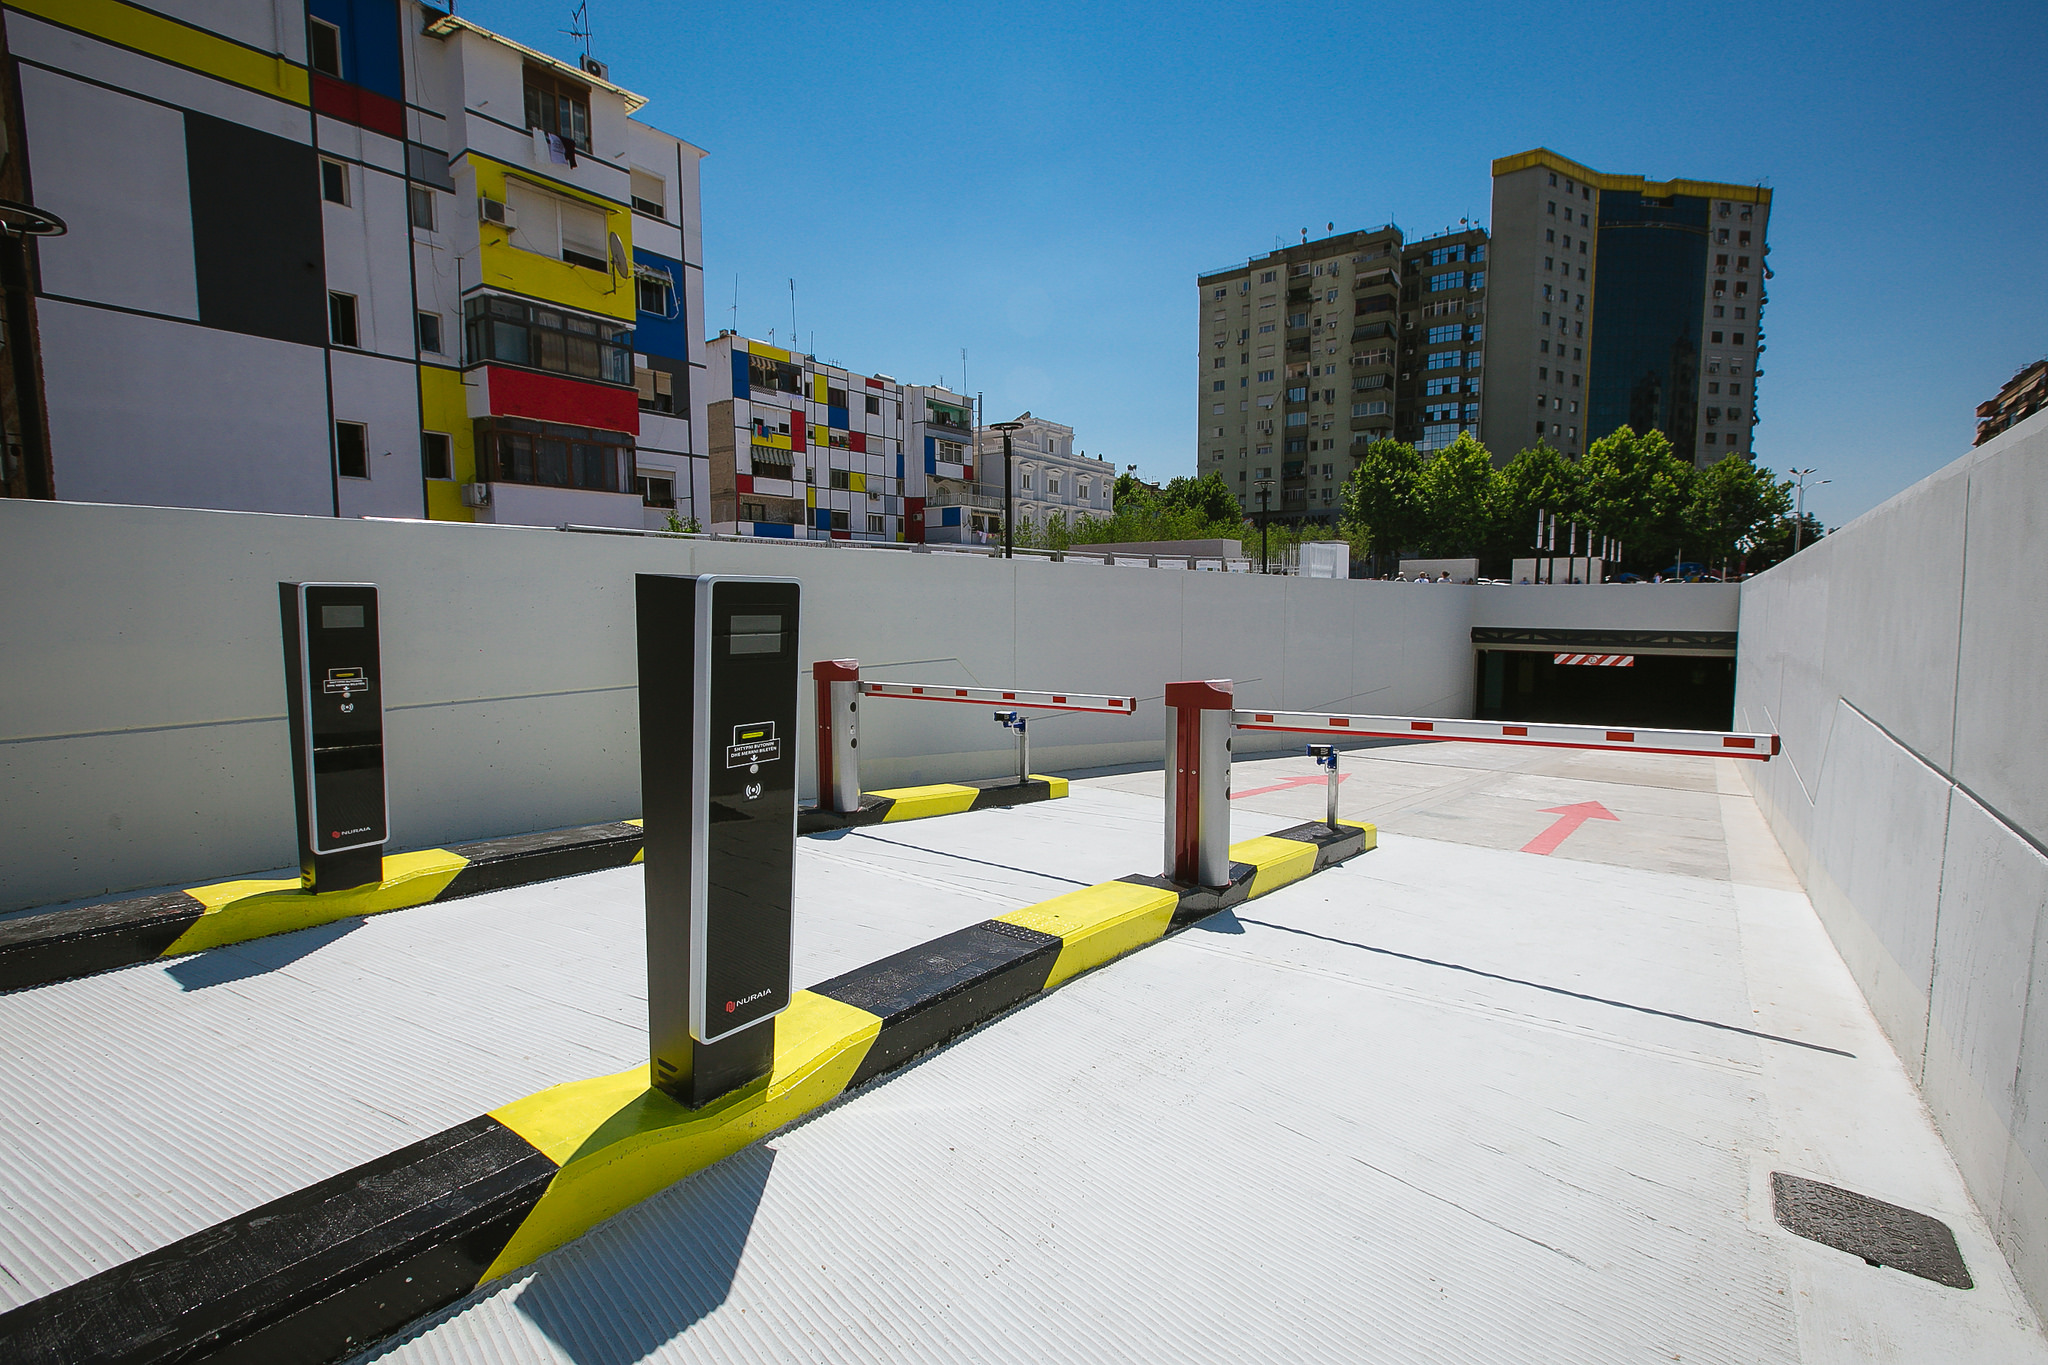  Komuna e Prishtinës: Një parking i madh nëntokësor është planifikuar në hyrje të Prishtinës për veturat që vijnë nga ana e Podujevës